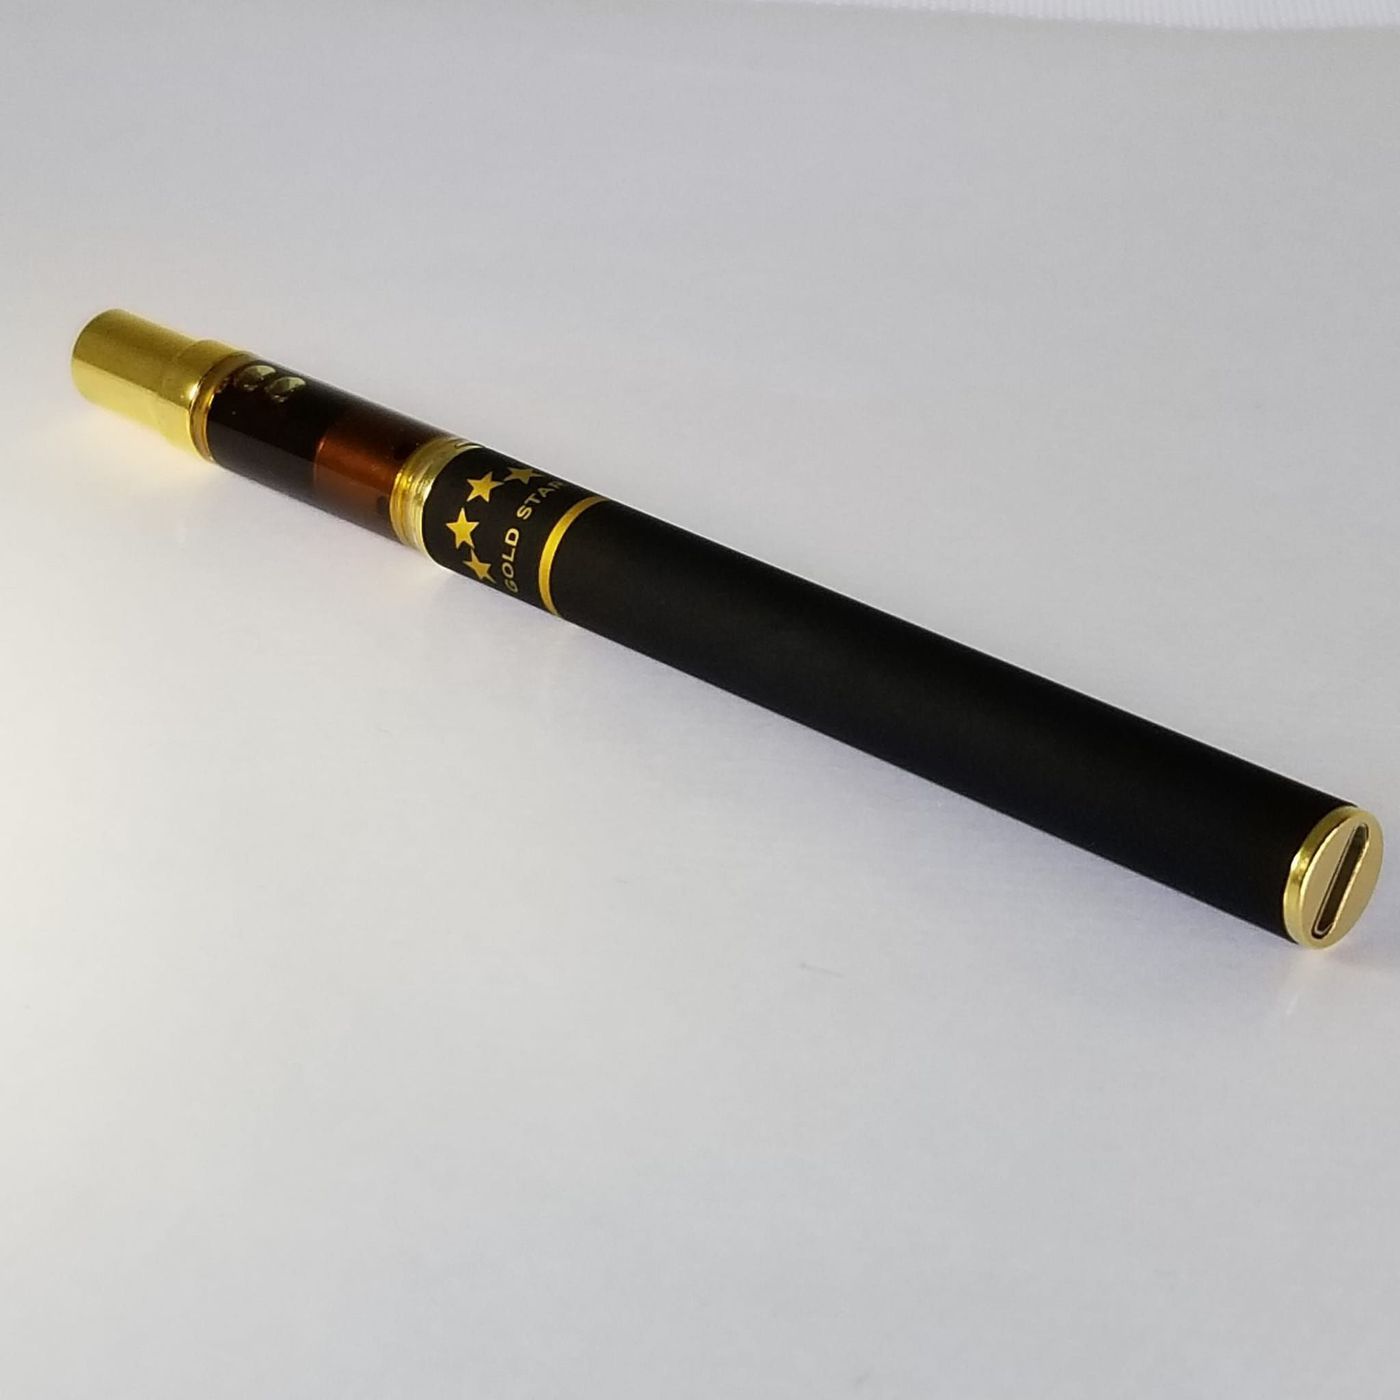 Gold Star Rosin - Disposable Vape Pen - MK Ultra Lemon Haze 0.35g